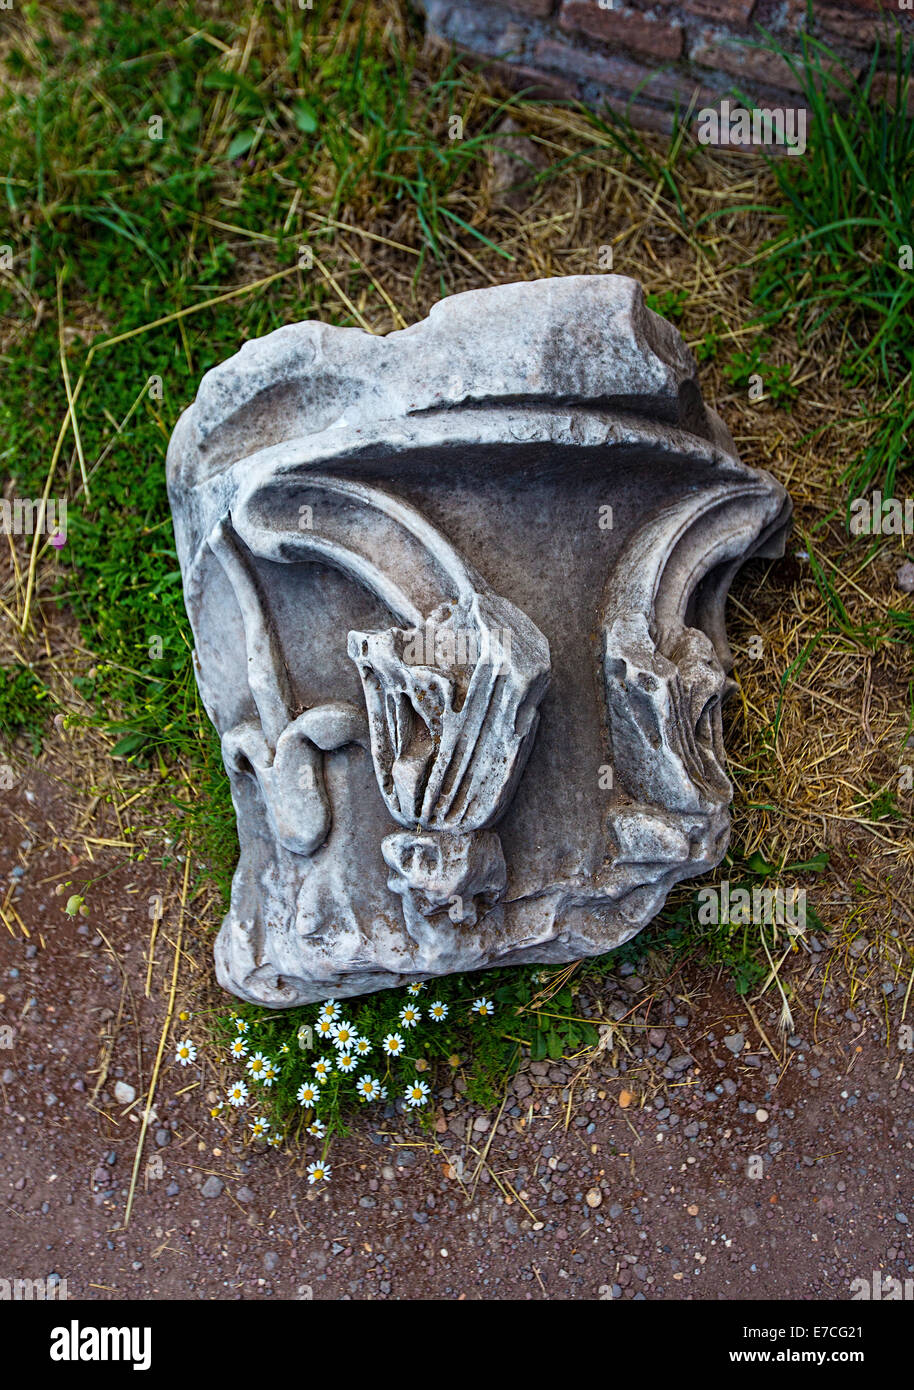 Détail d'un morceau brisé d'architecture, ancienne cité romaine (Italie). La germination des fleurs en bas. Banque D'Images